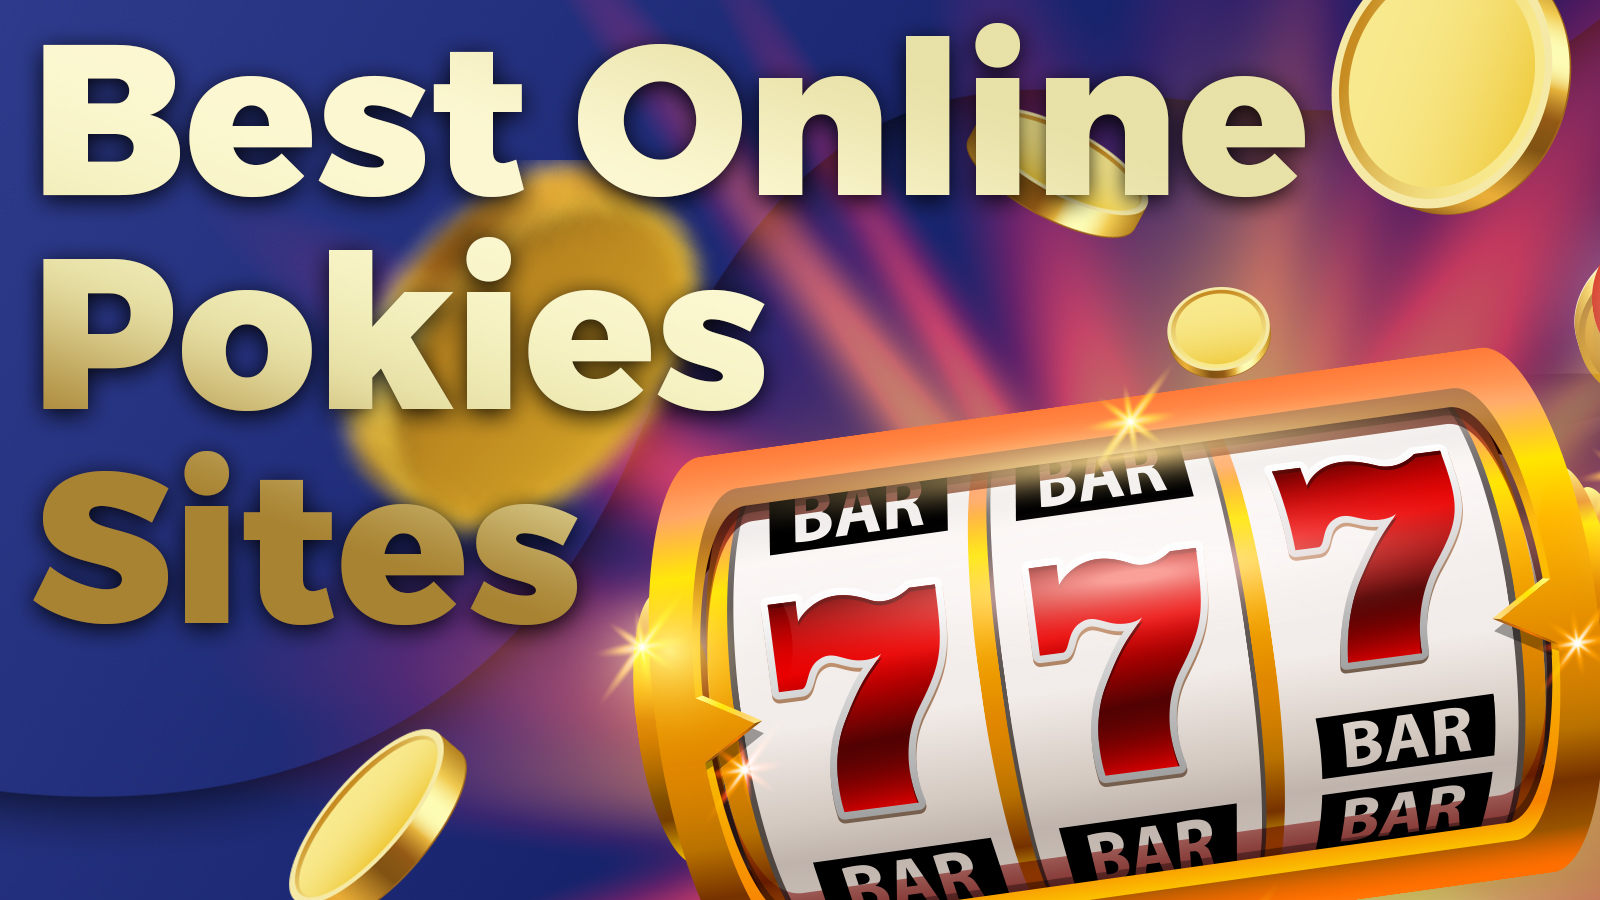 Best Online Pokies Sites Ranked for Security, Bonuses & the Best Online Pokies